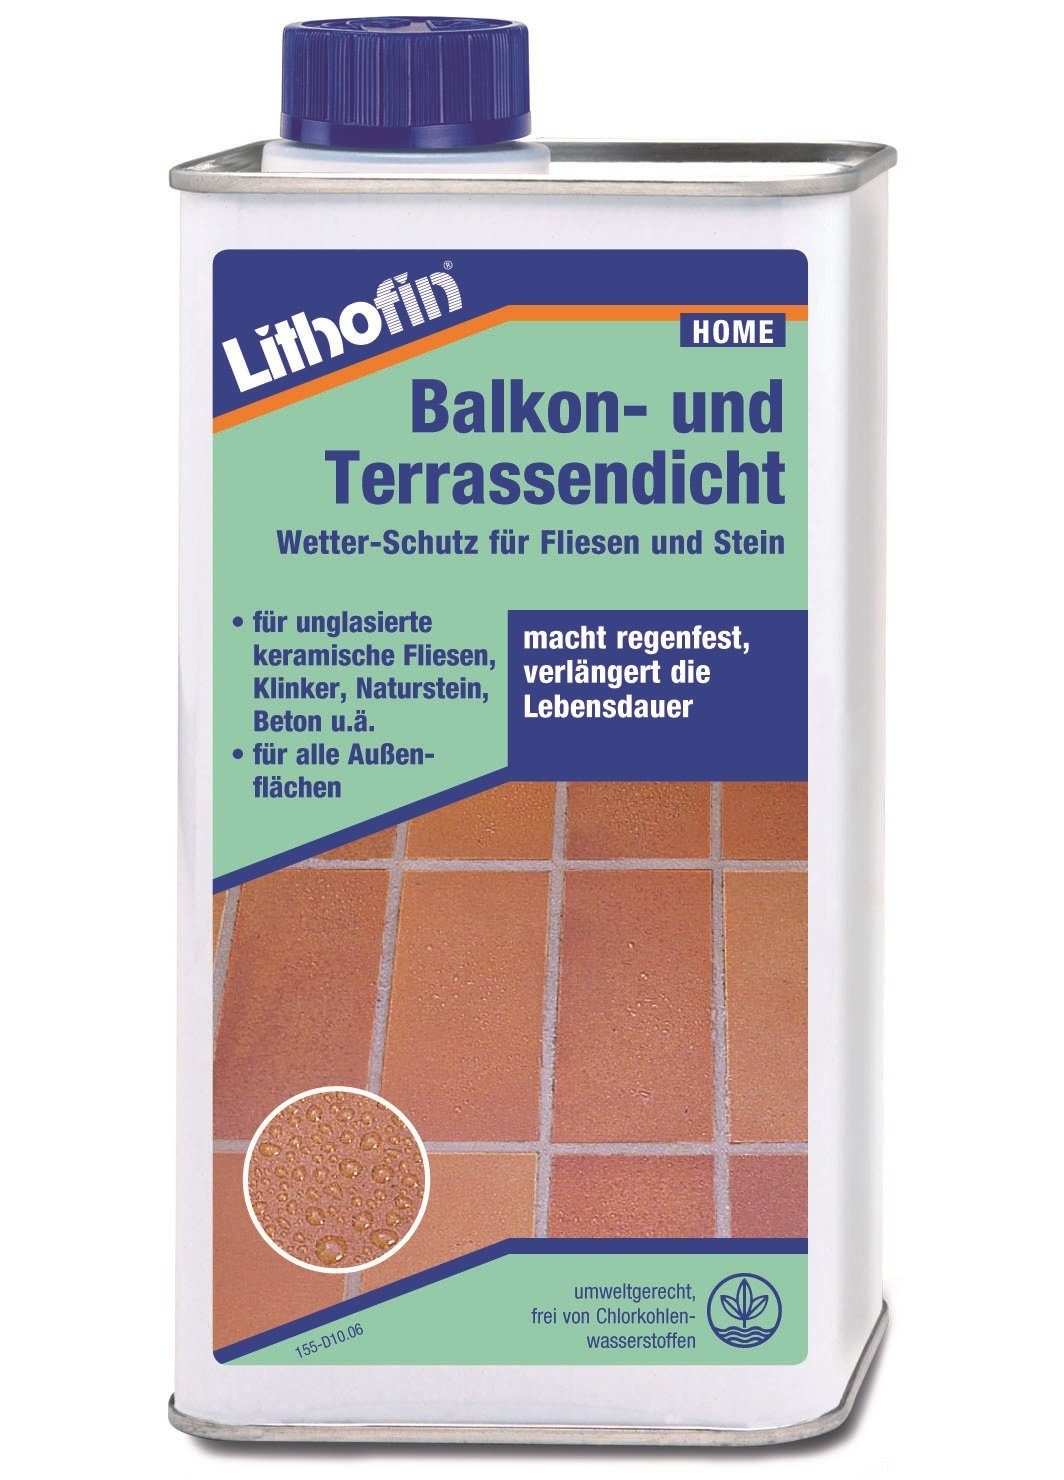 und Naturstein-Reiniger Ltr 1 Balkon- Terassendicht Lithofin LITHOFIN